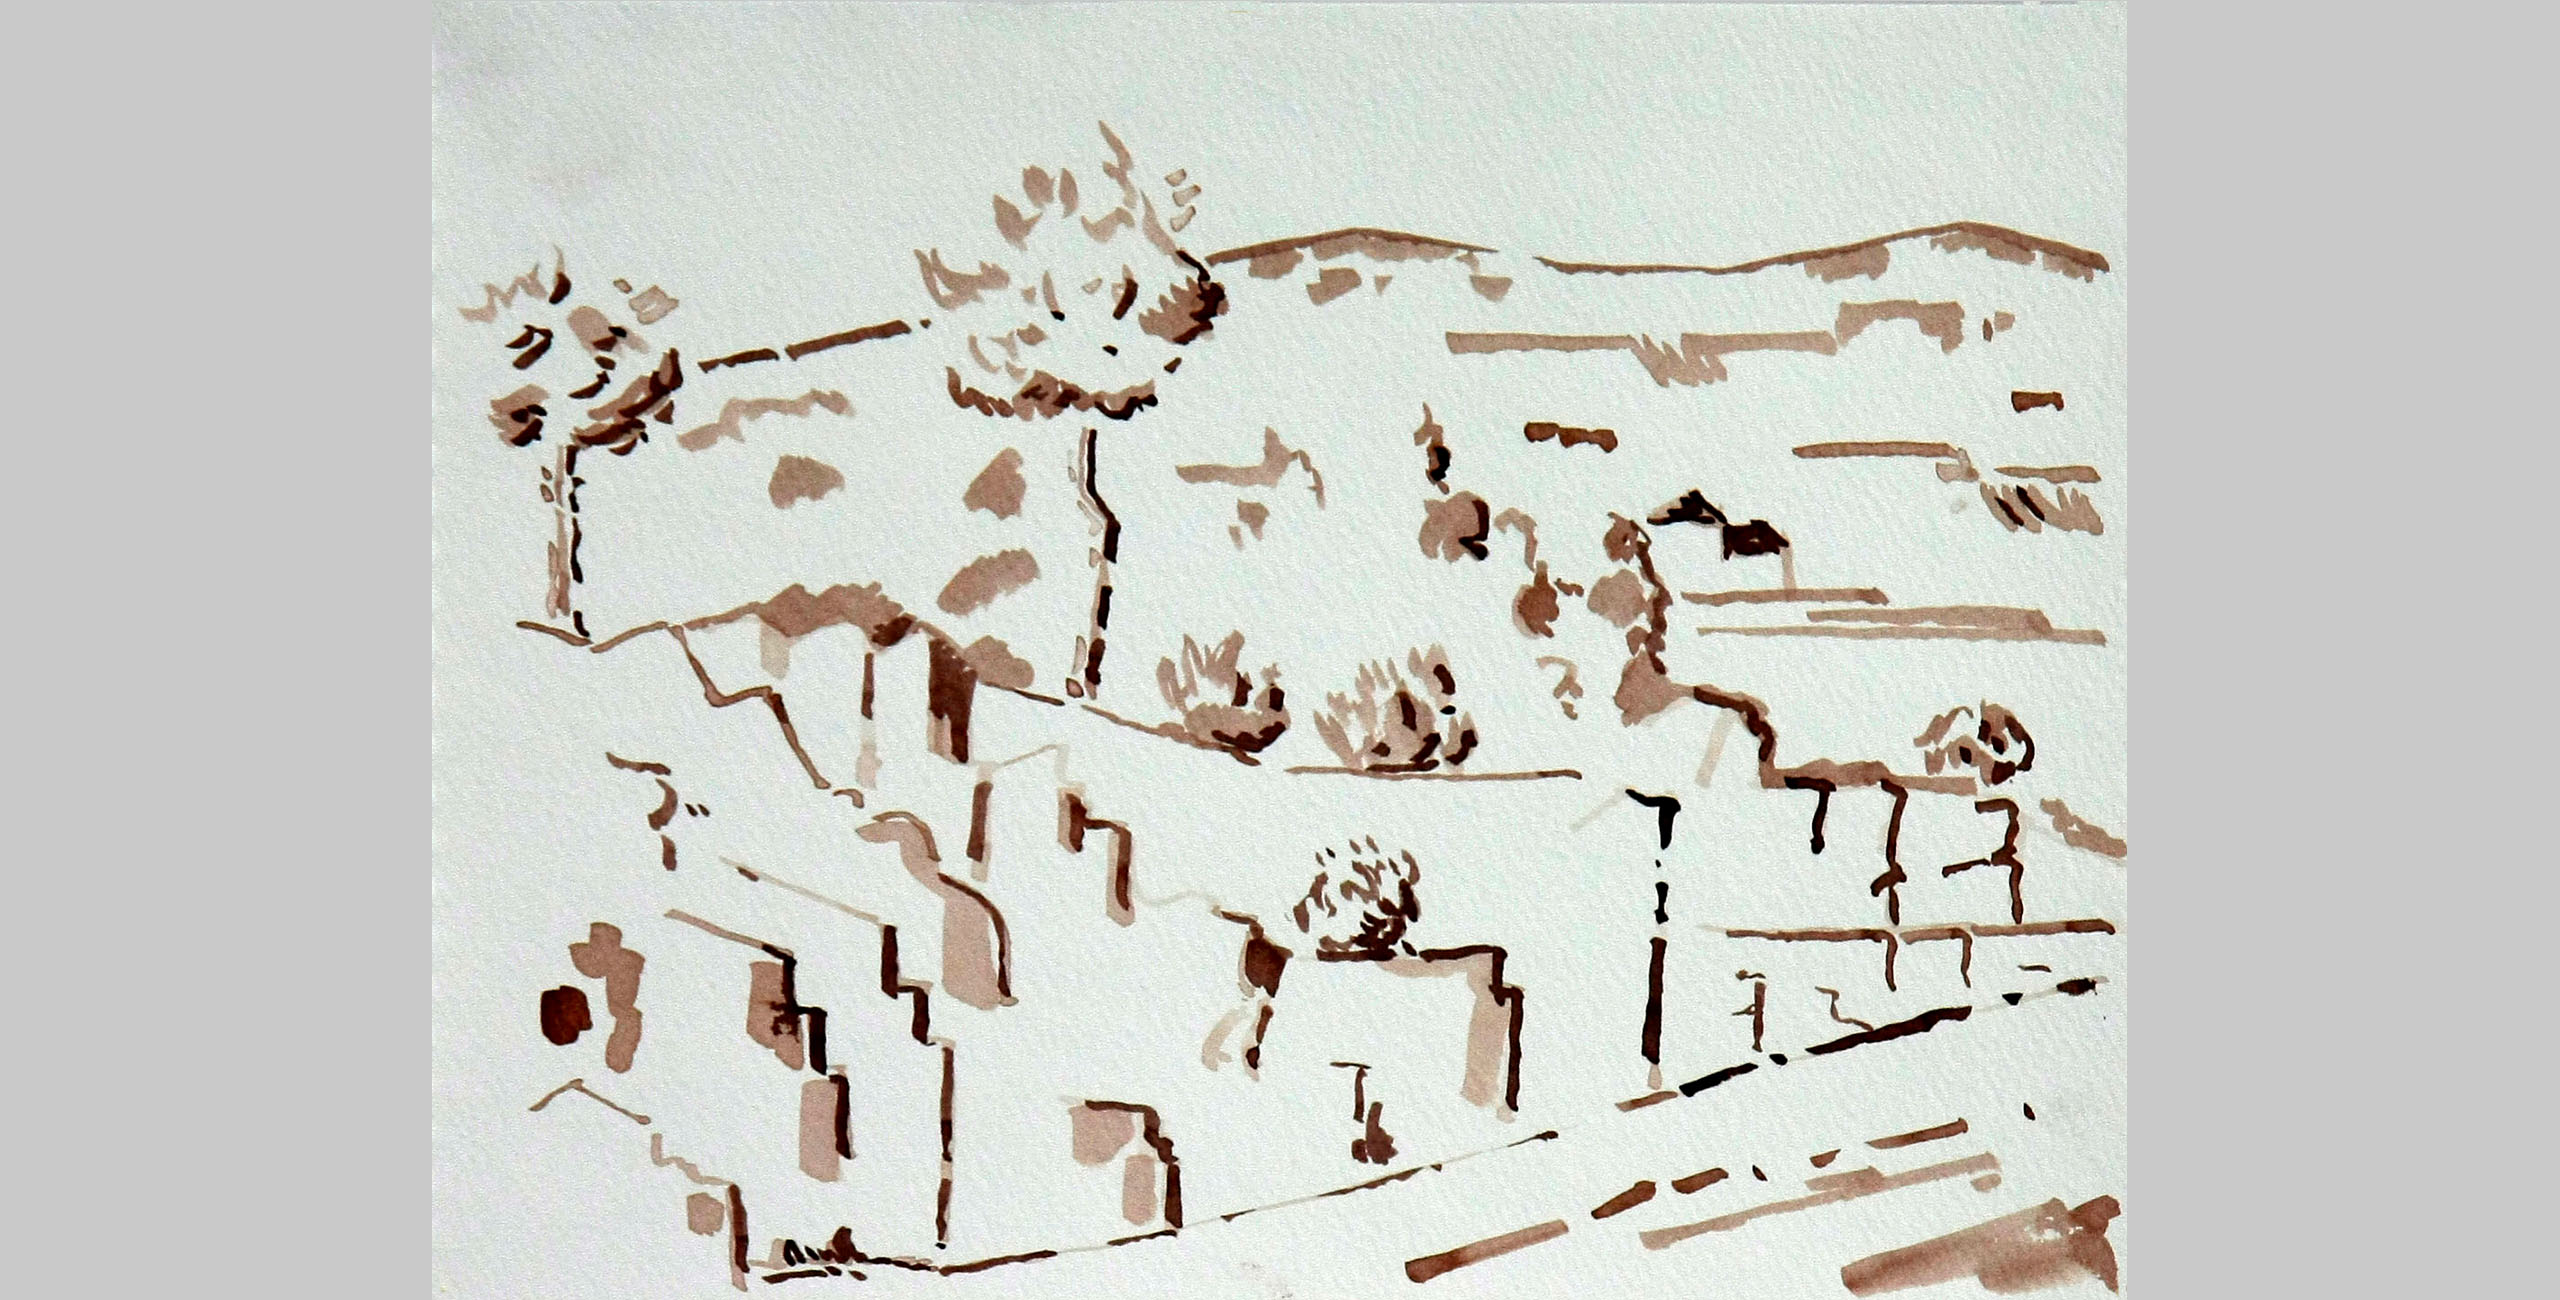 Landscape 20, 2011, ink on paper